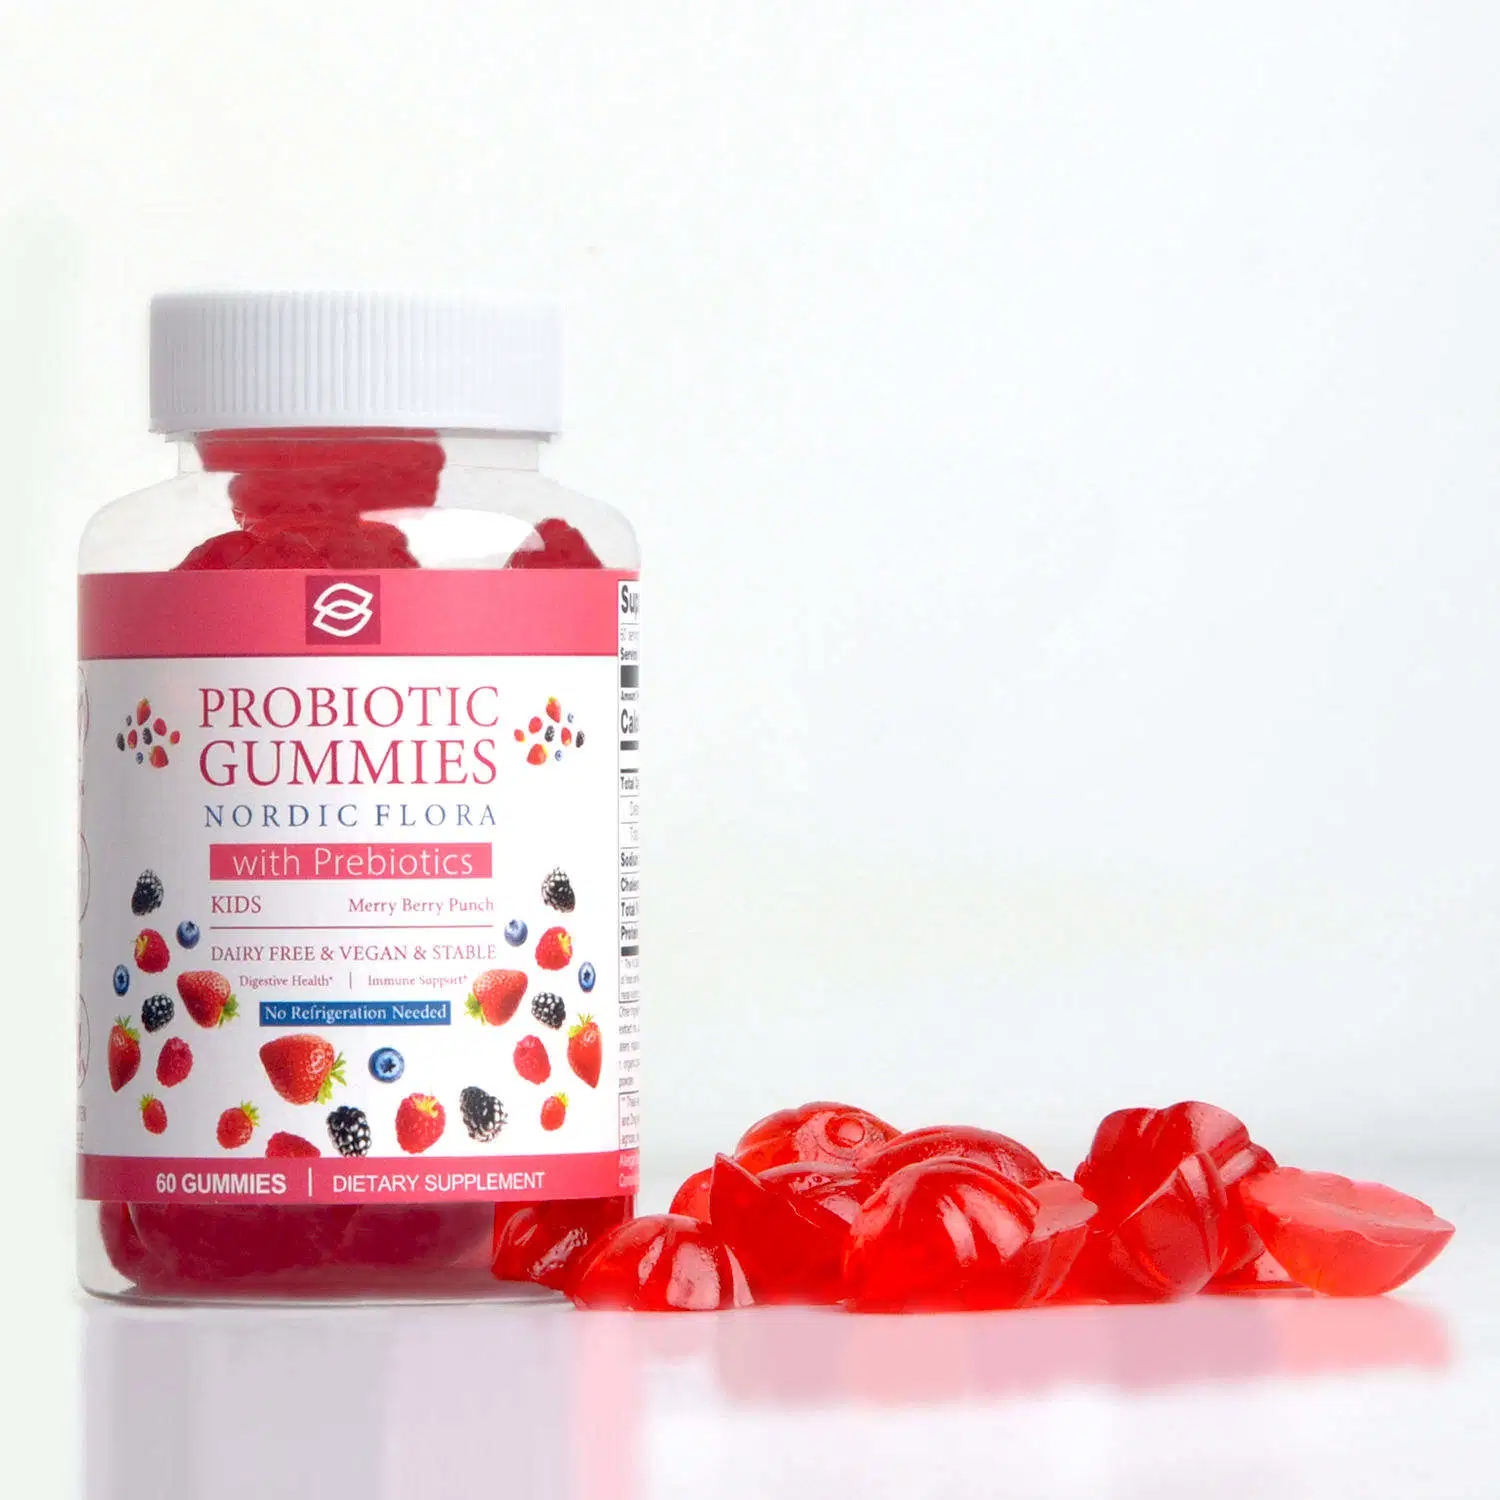 Помочь пищеварение похудение продукты повысить иммунитет желудочно-кишечного уход пищеварительный Gummies Probiotic функции